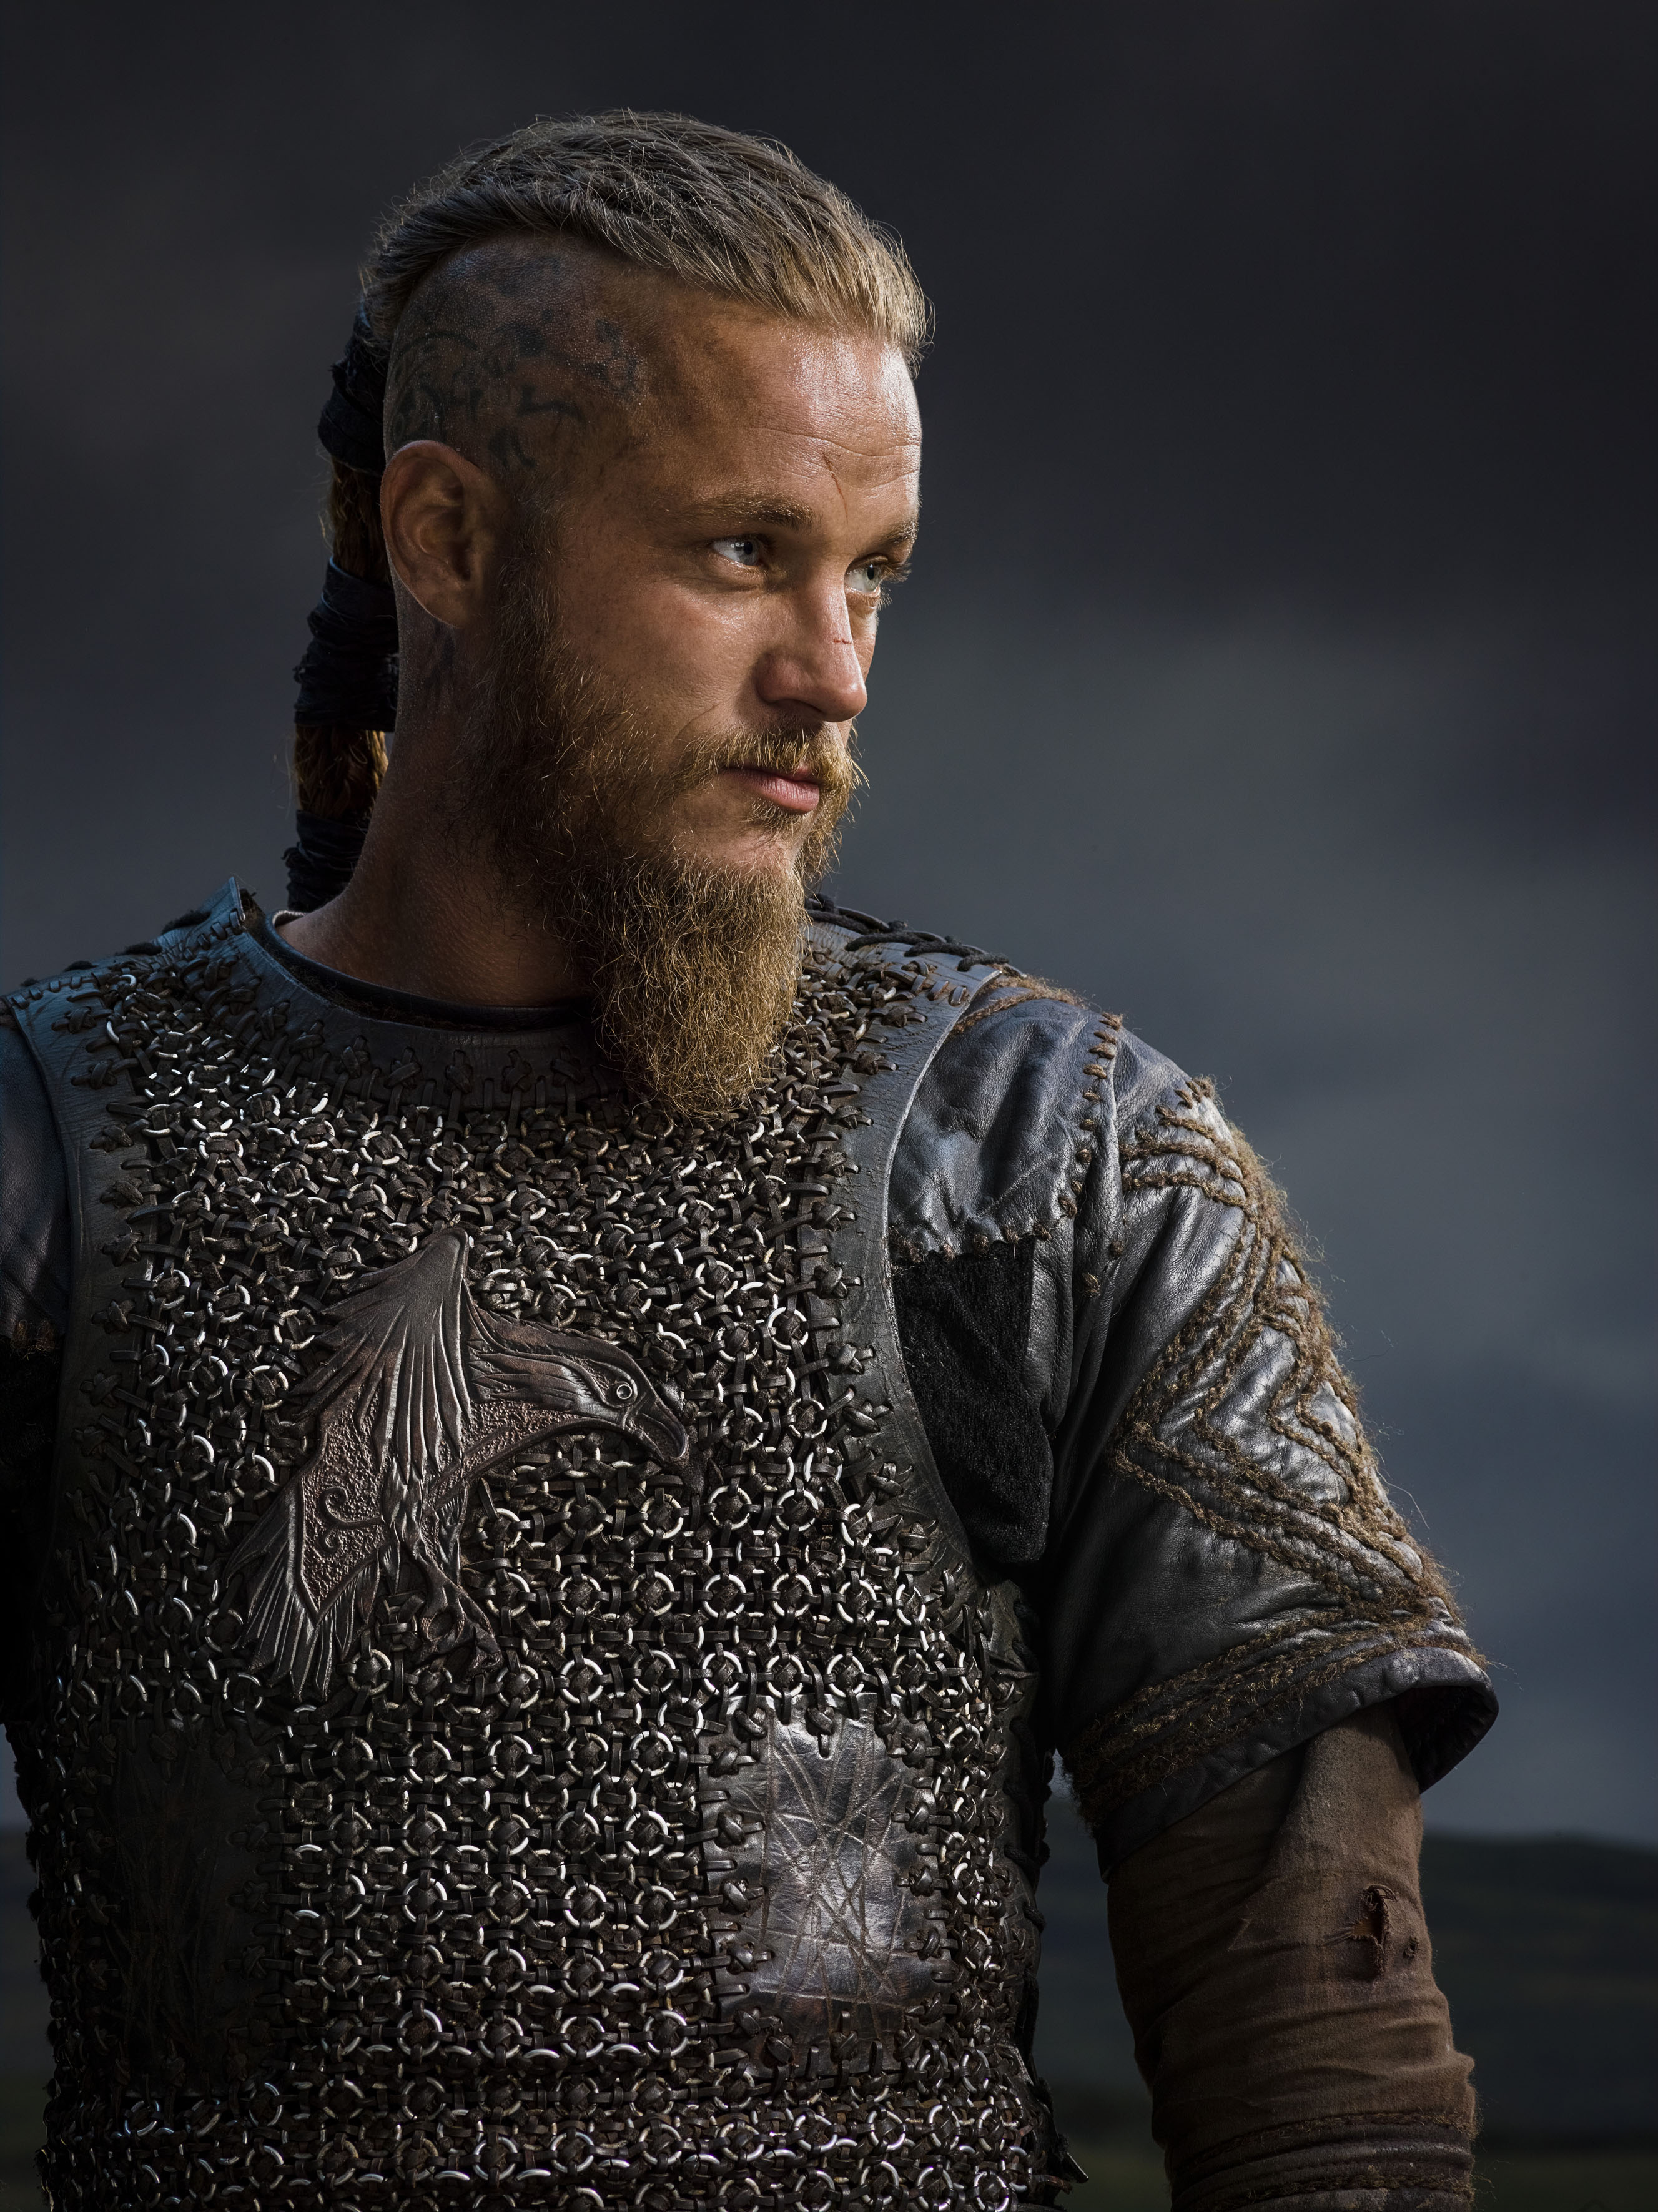 Vikings-Season-2-Ragnar-Lothbrok-official-picture-vikings-tv-series-37651123-2655-3543.jpg